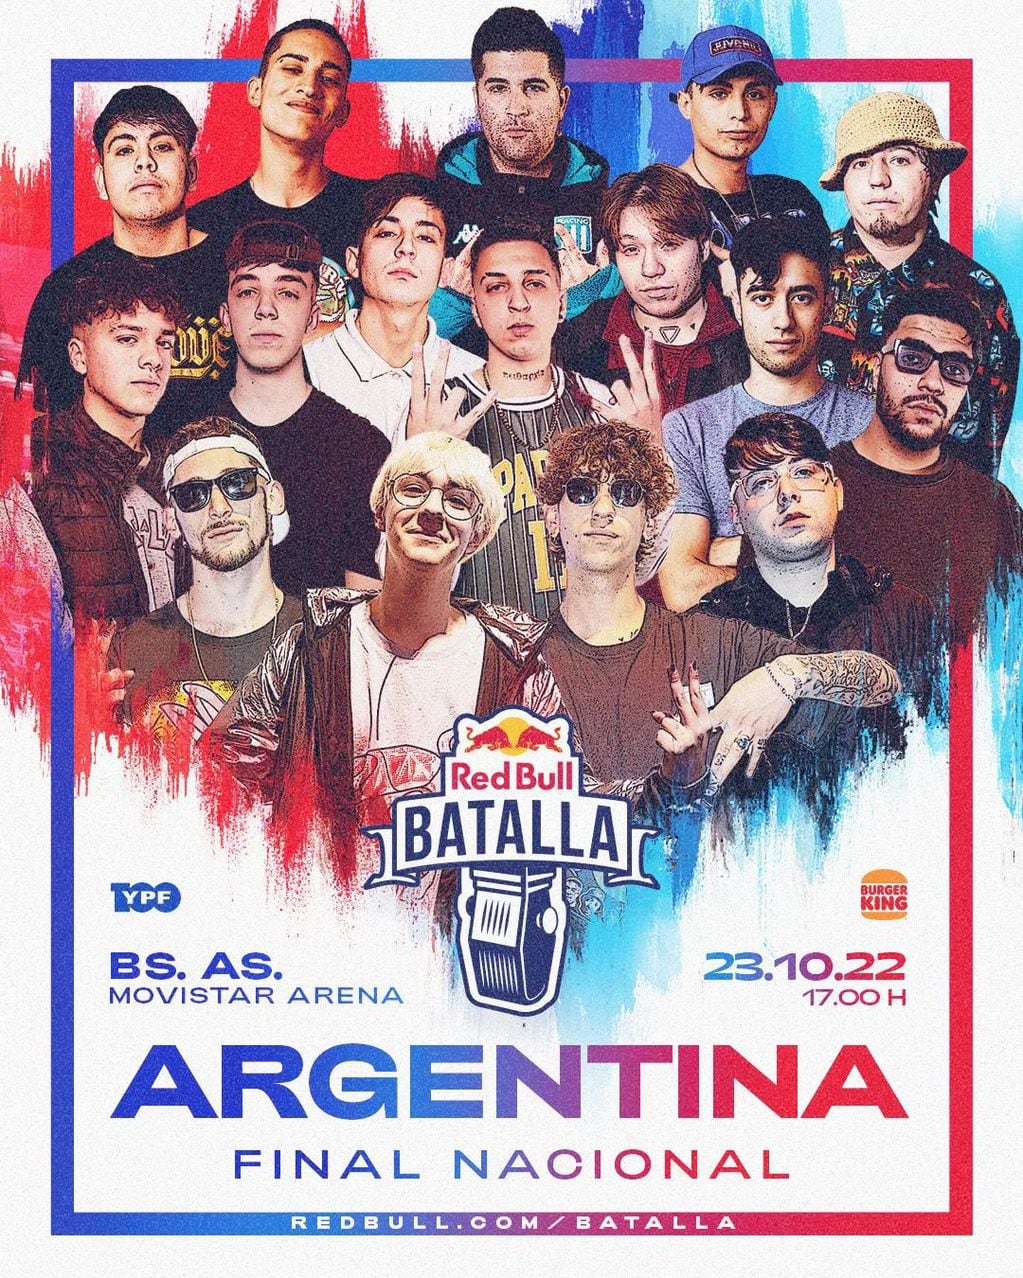 Final Nacional de Red Bull Argentina 2022: competidores, host, DJ y jurado confirmados